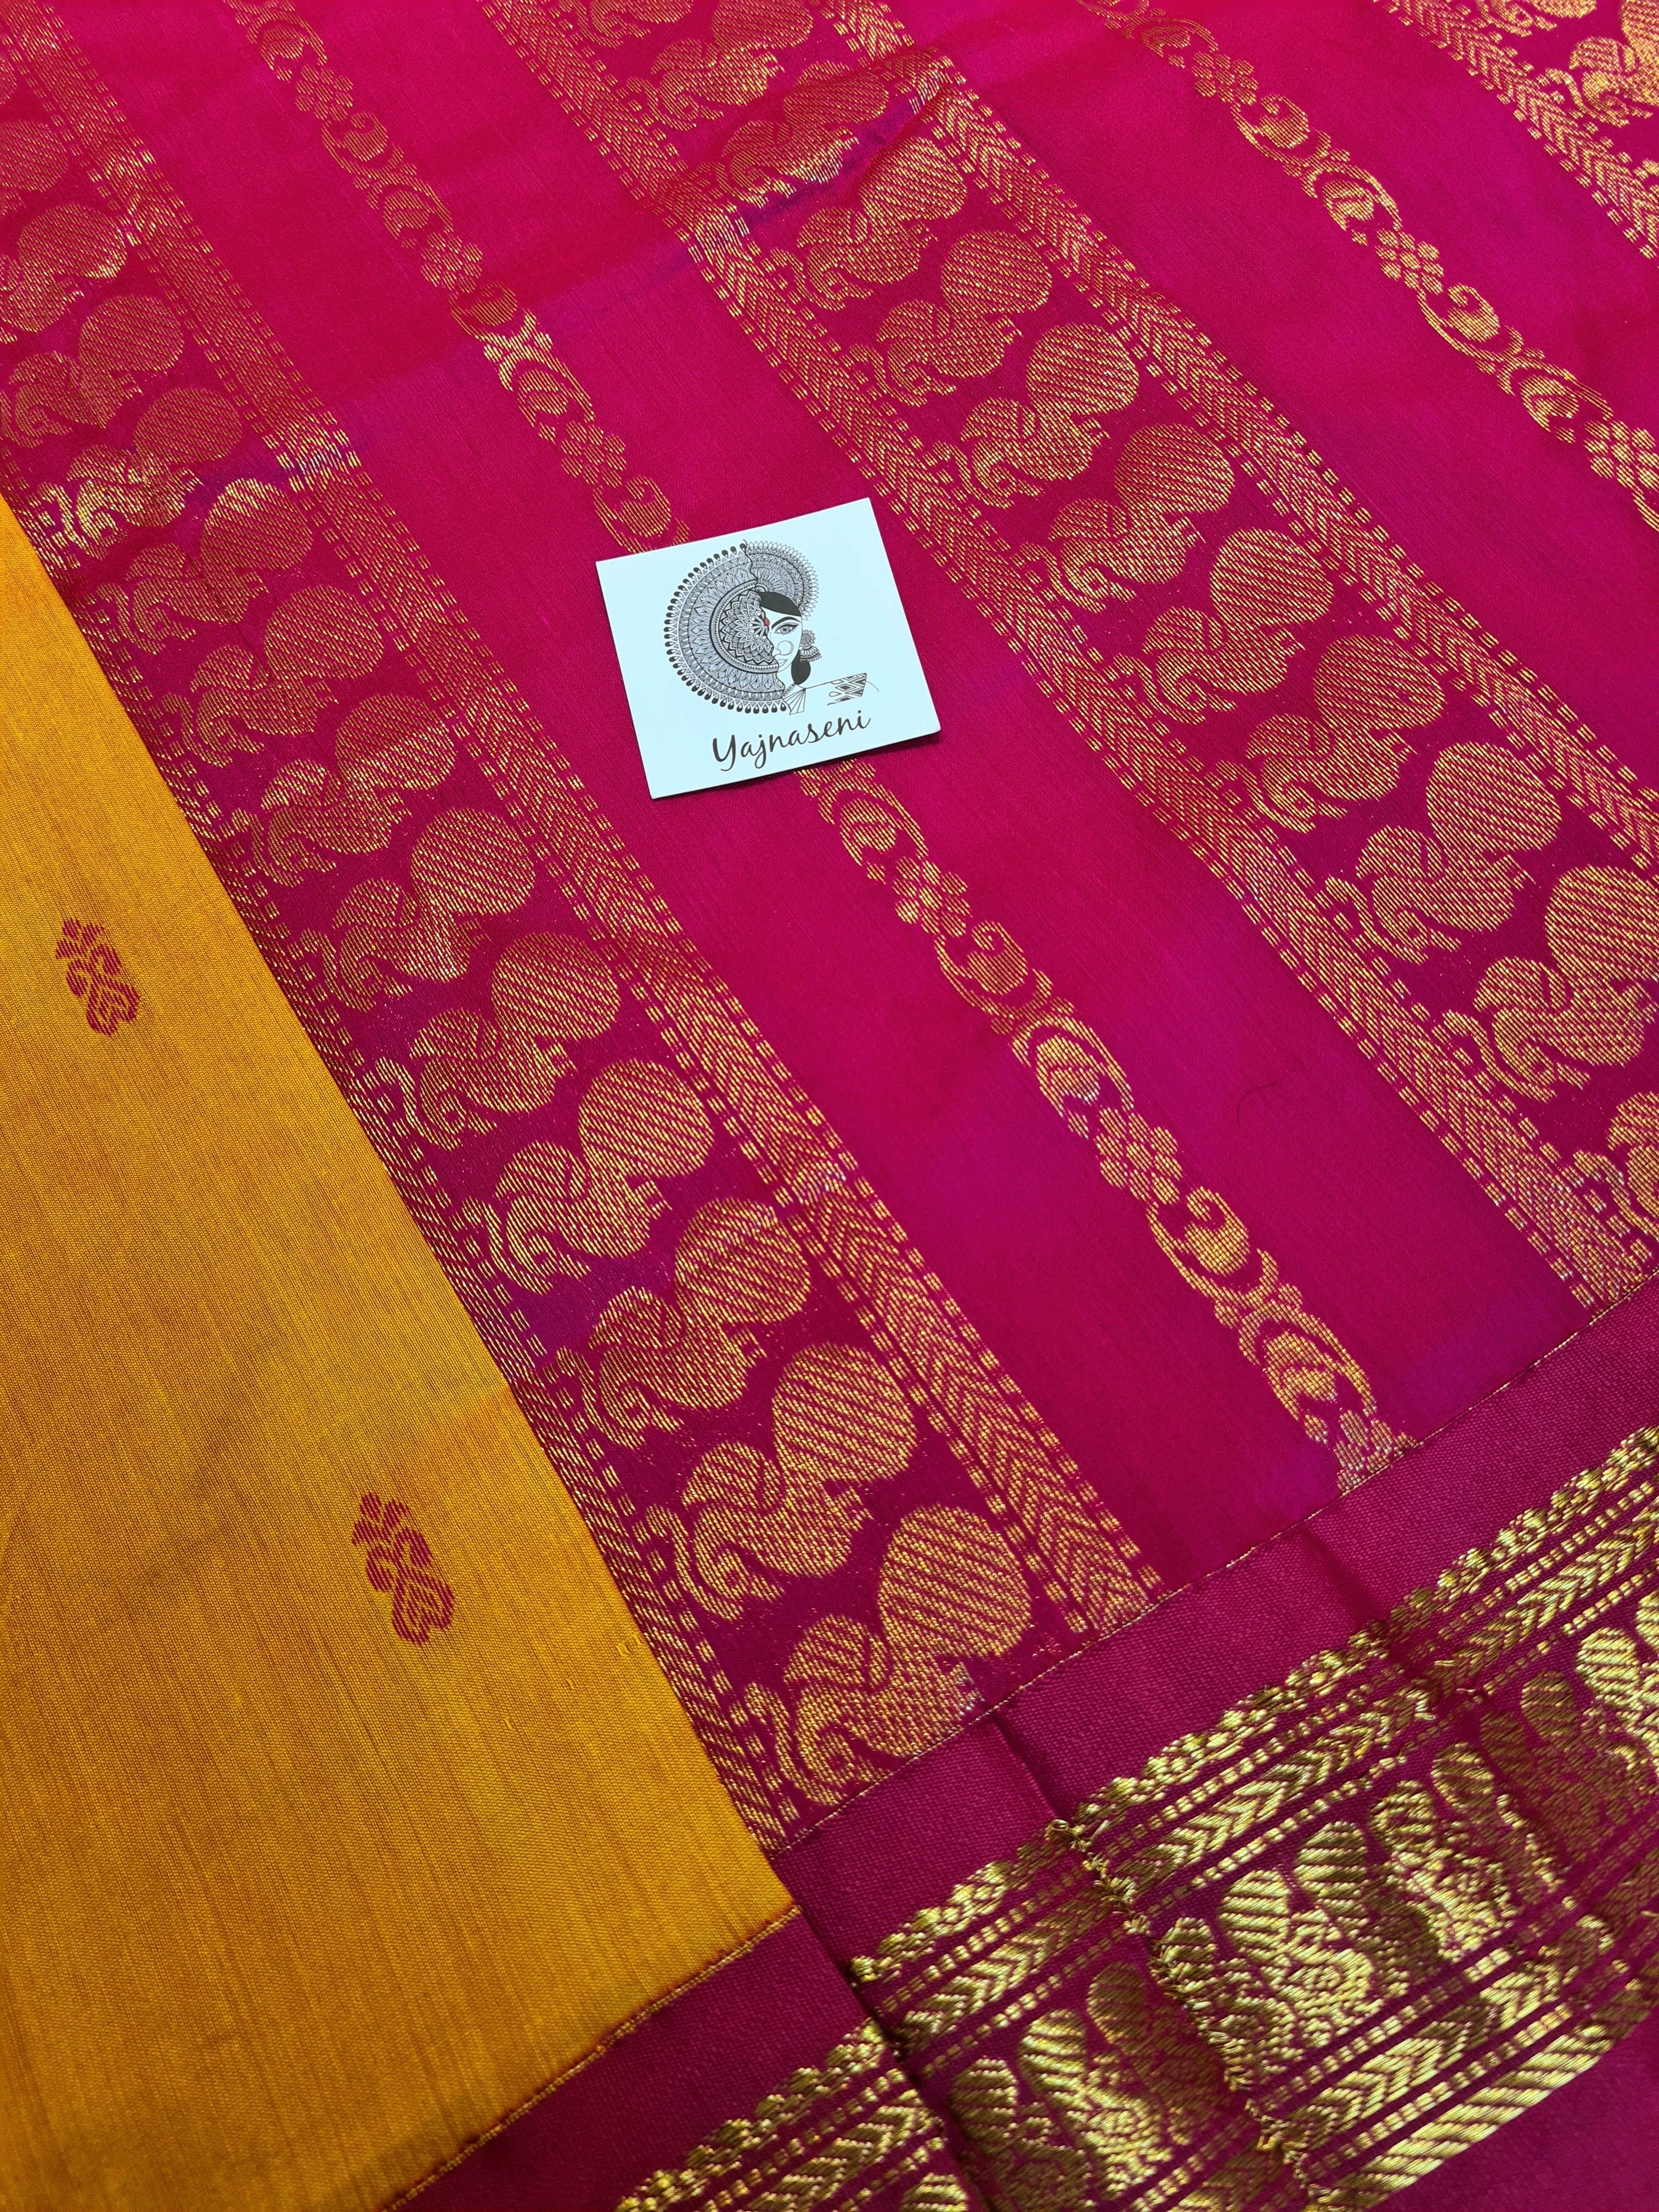 Kalyani Cotton Saree - Sandalwood with Pink